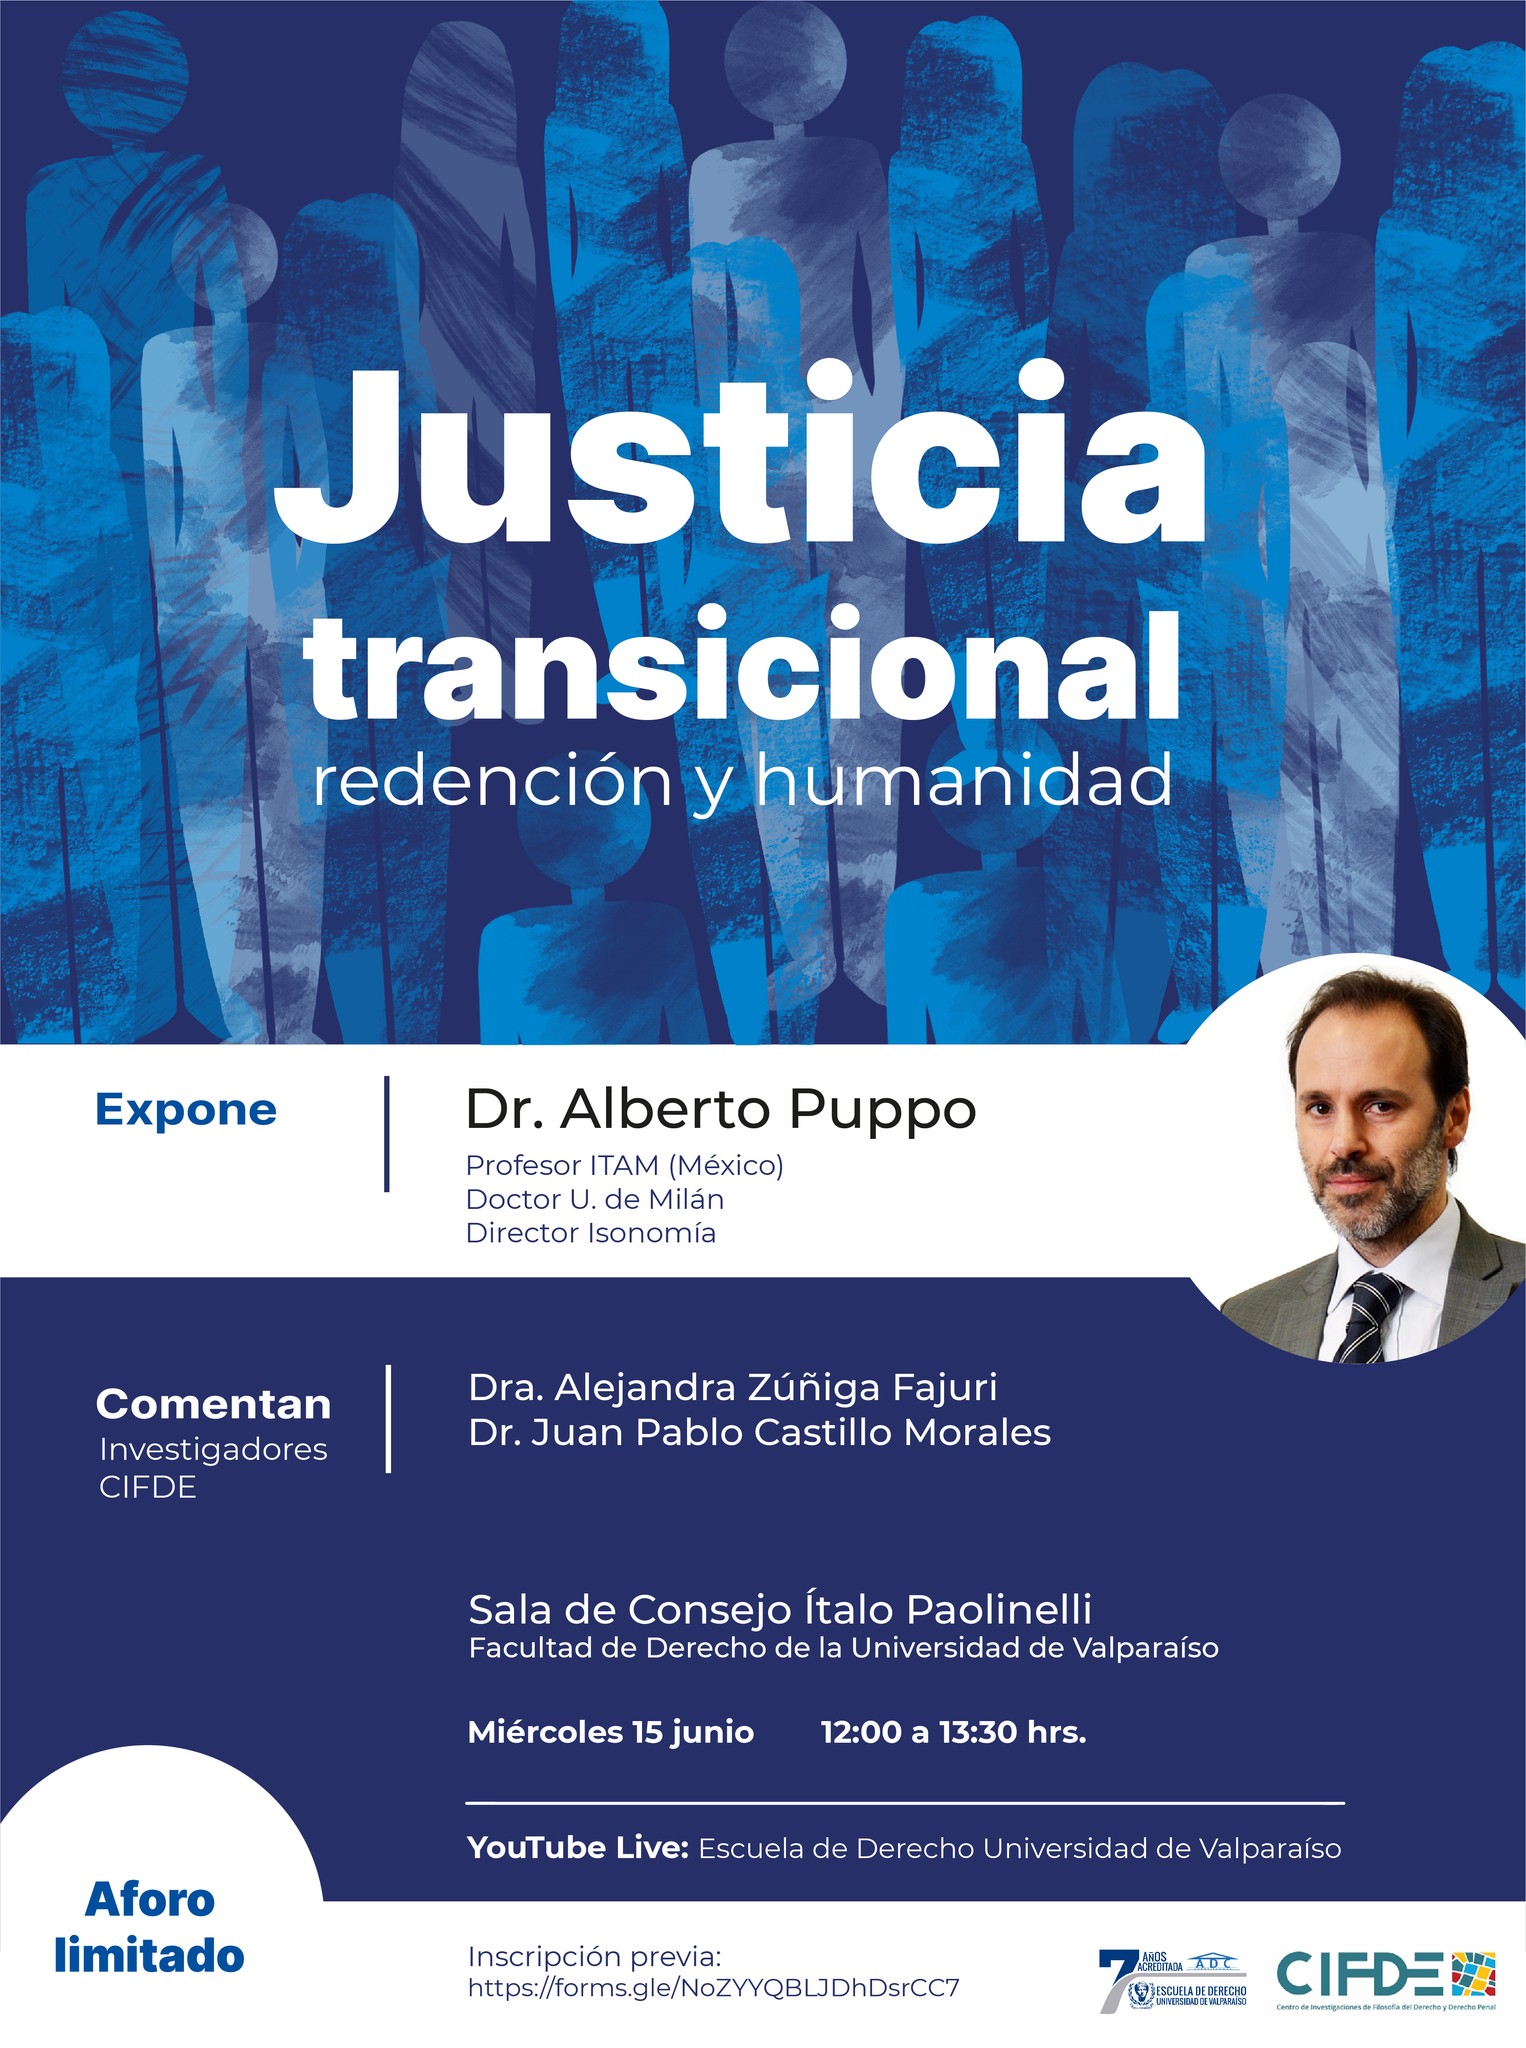 Facultad de Derecho de la Universidad de Valparaíso invita a seminario "Justicia transicional: redención y humanidad"